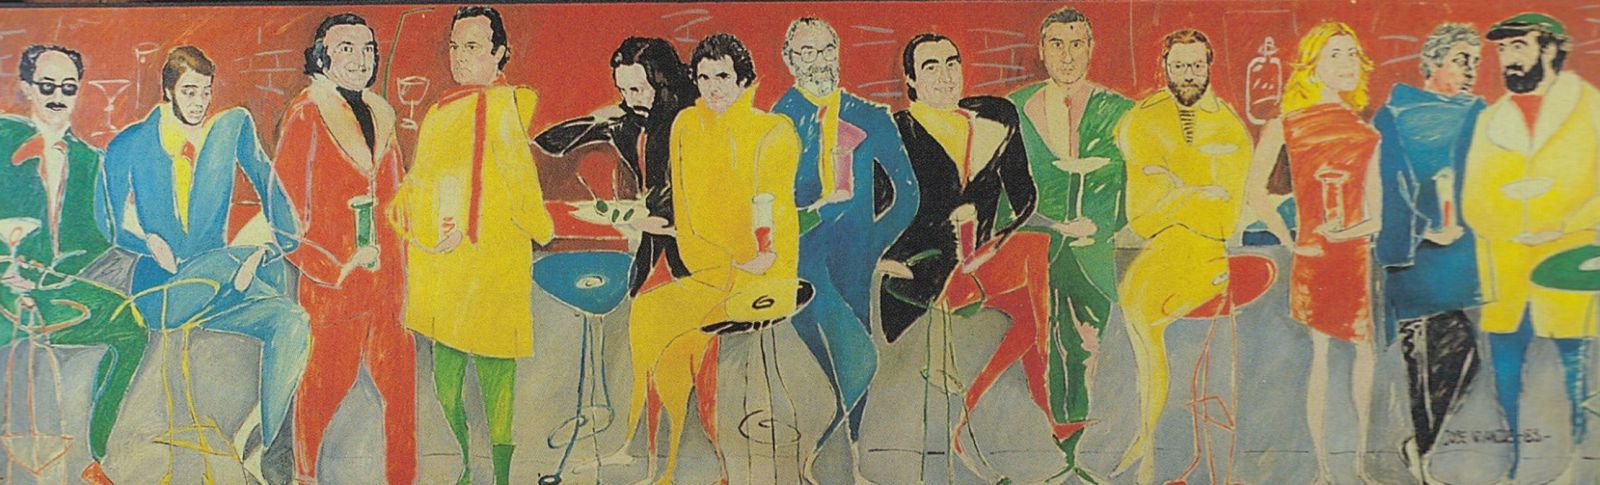 Mural del pub Pick-Up realizado por Vivancos en 1983 con algunos de los personajes más populares de la vida asturiana del momento.